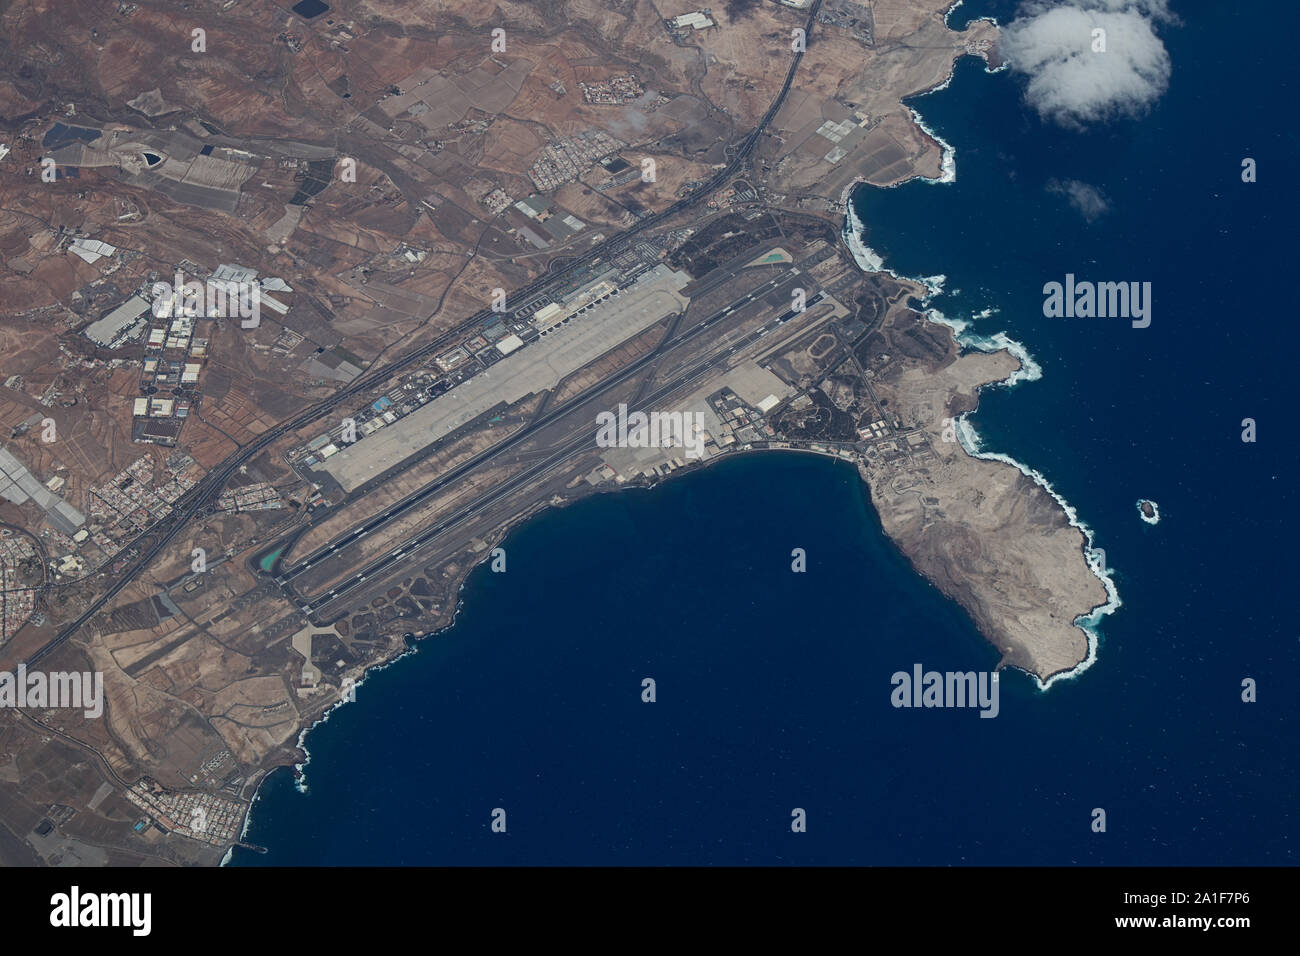 September 2019. Gran Canaria, Spanien. Luftaufnahme von Gran Canaria  Flughafen, Aena spanischen Flughafen befindet sich auf der Insel Gran  Canaria, in der Bucht von Ga Stockfotografie - Alamy